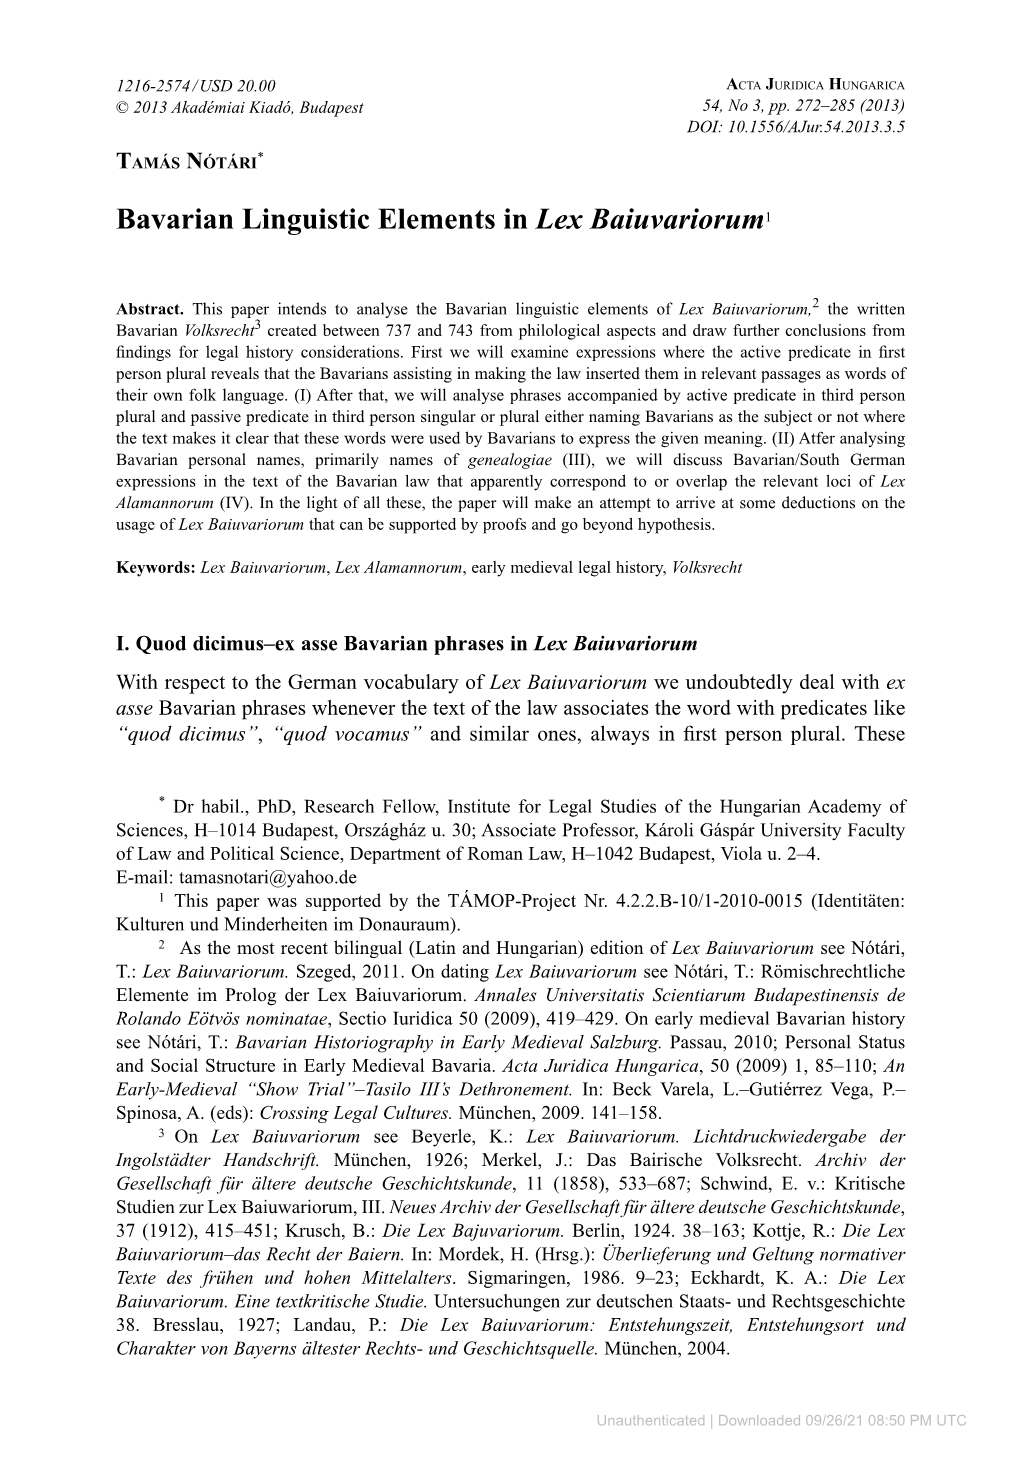 Bavarian Linguistic Elements in Lex Baiuvariorum1